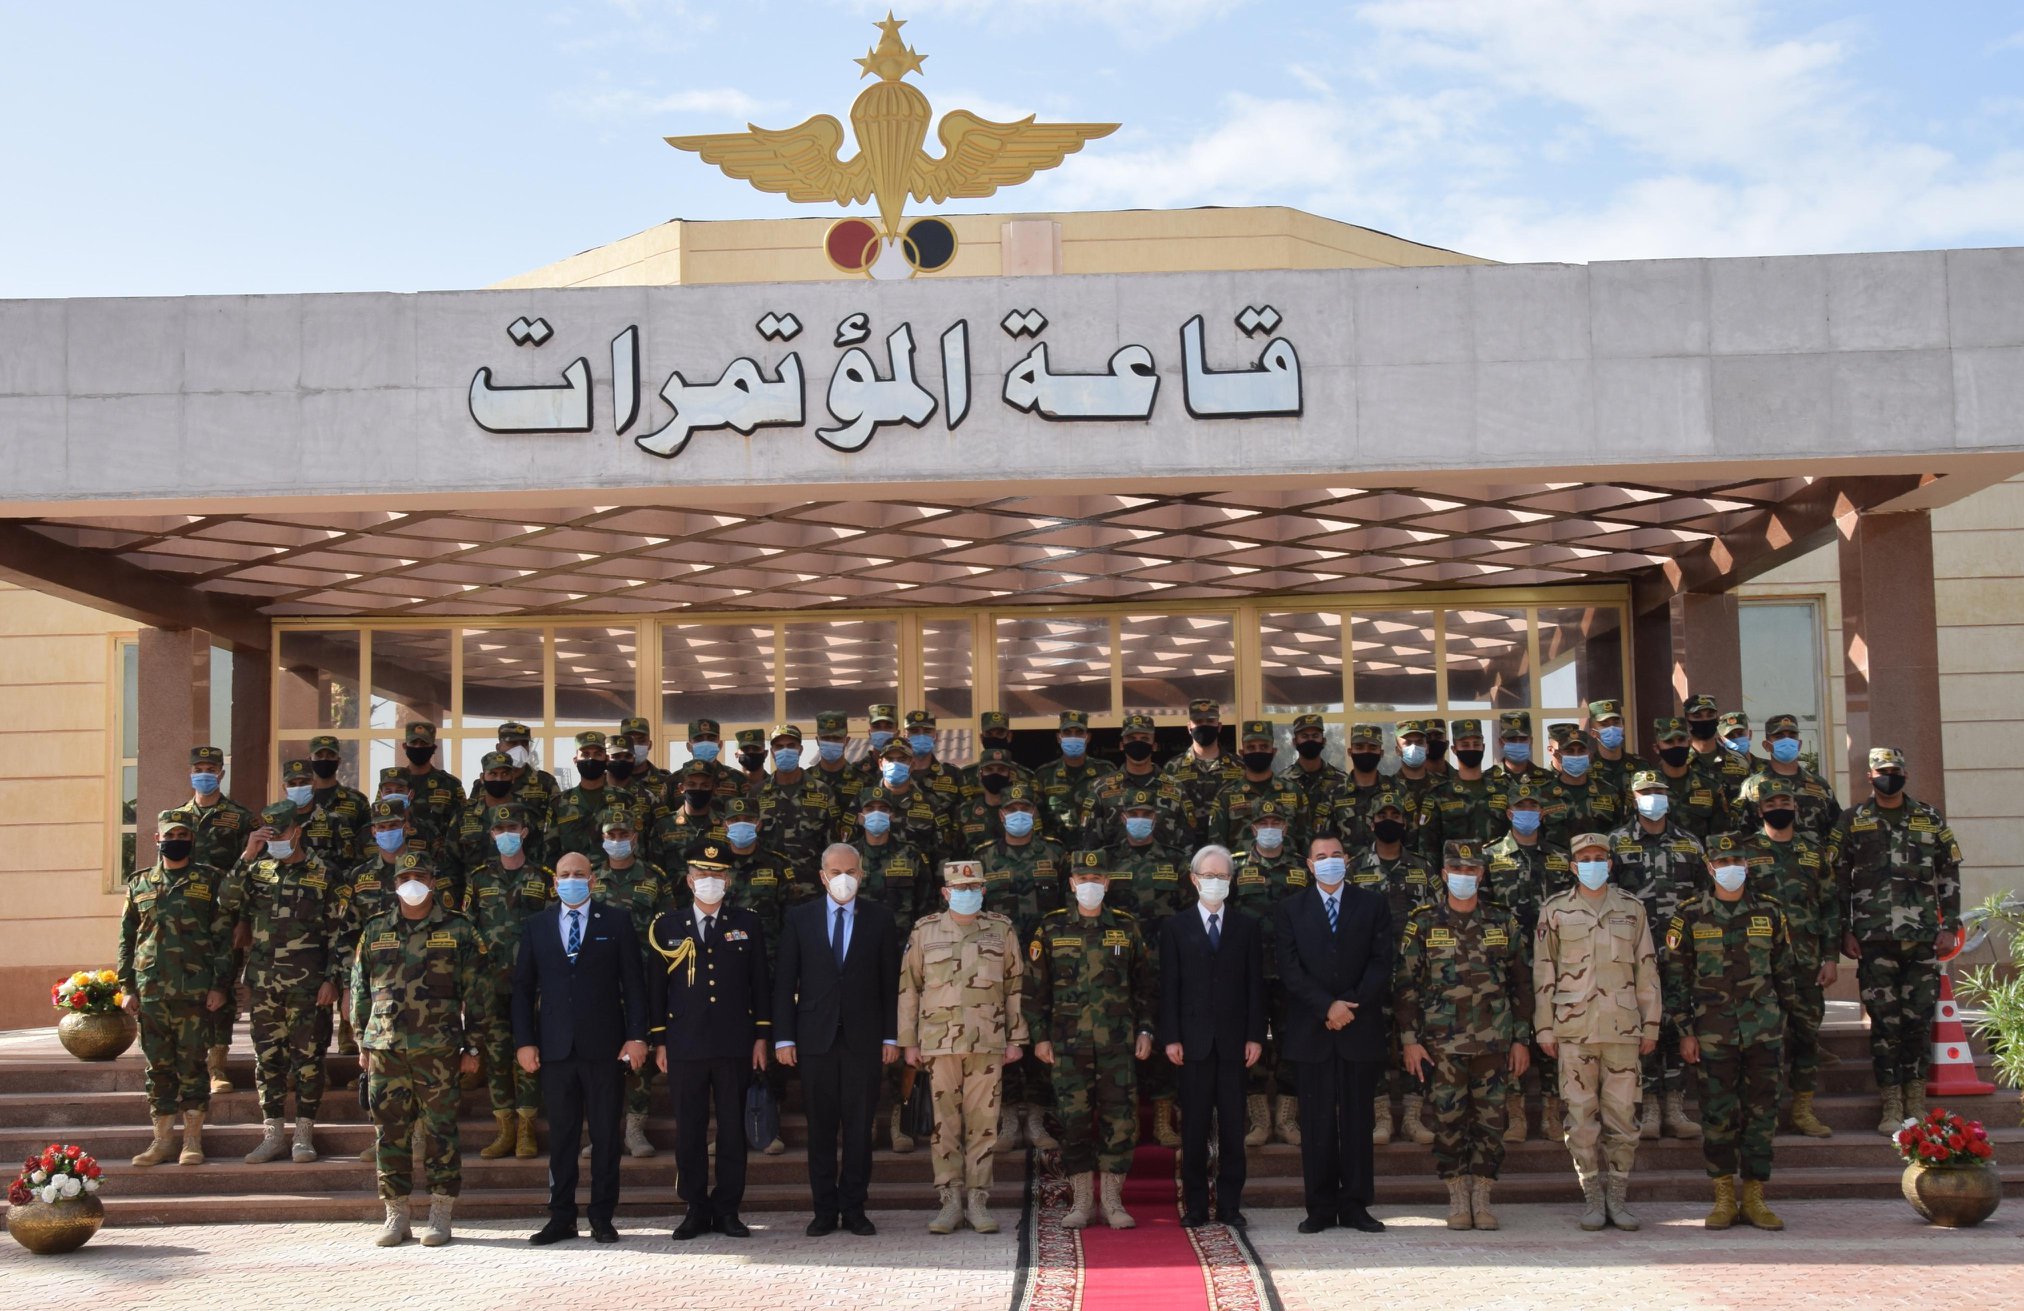   القوات المسلحة تعقد دورة تدريبية للتأهيل ضمن بعثة «حفظ السلام» بـ مالي